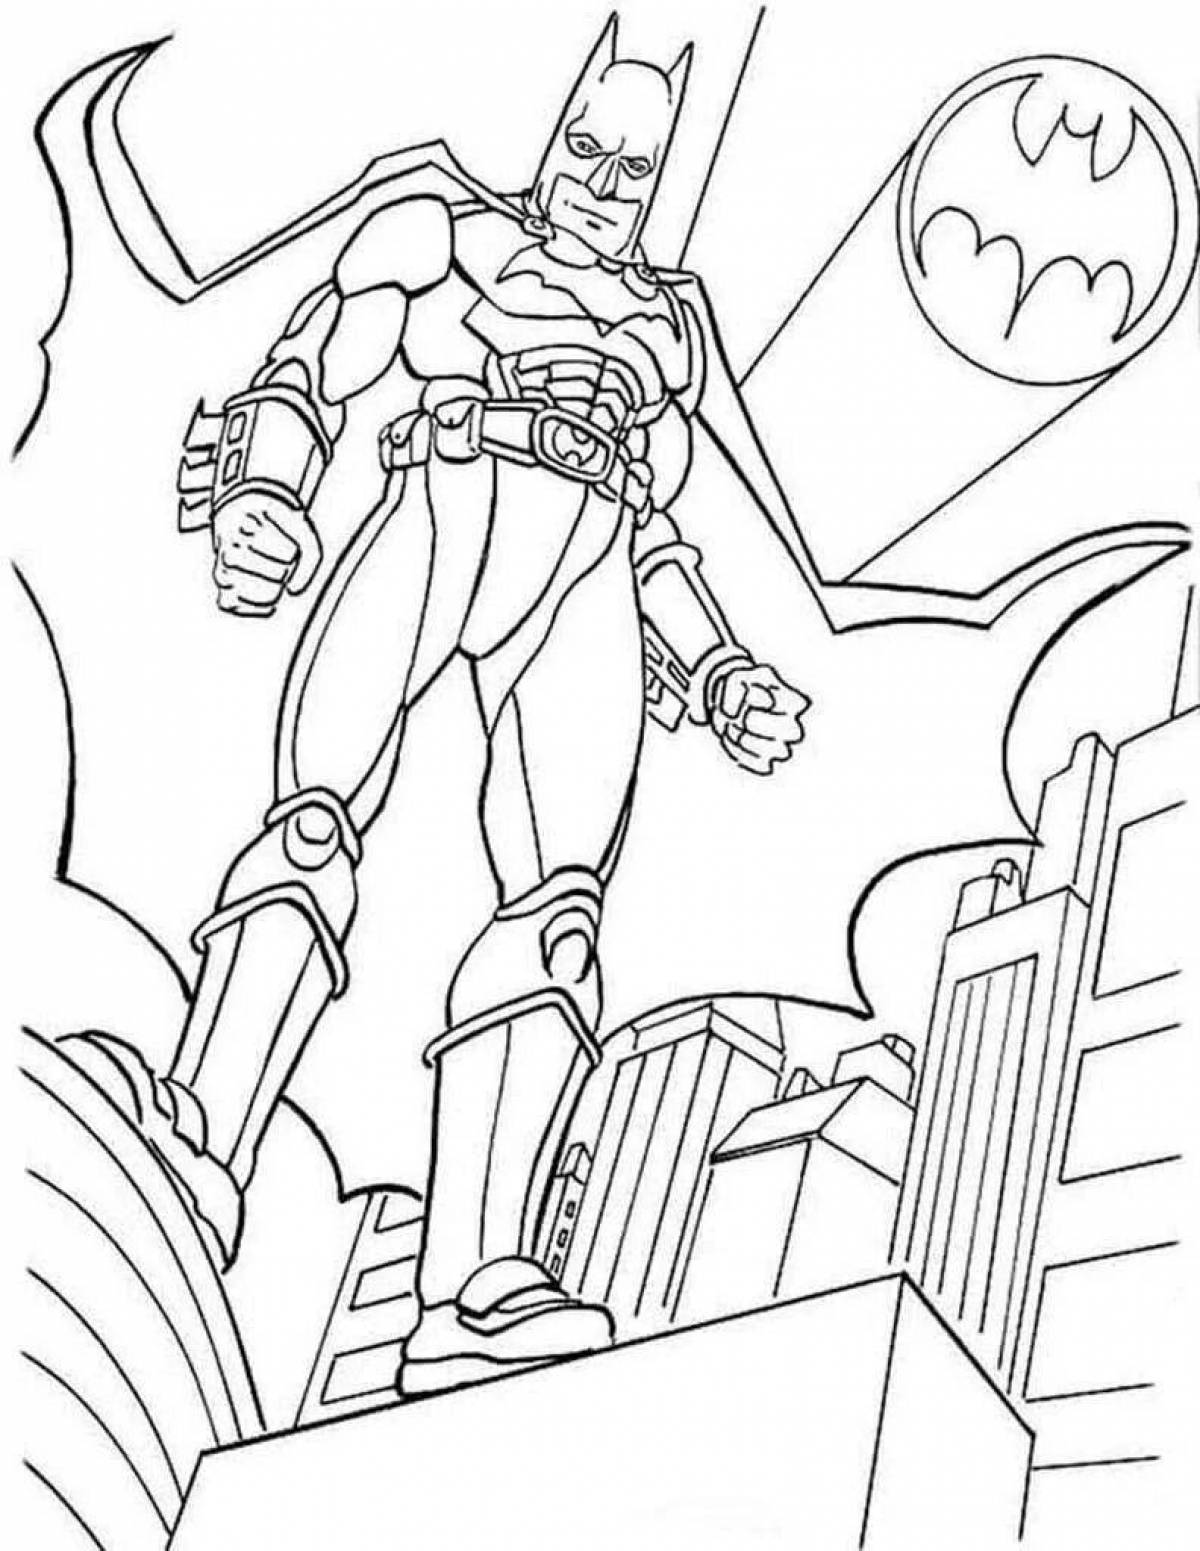 Batman elegant coloring book